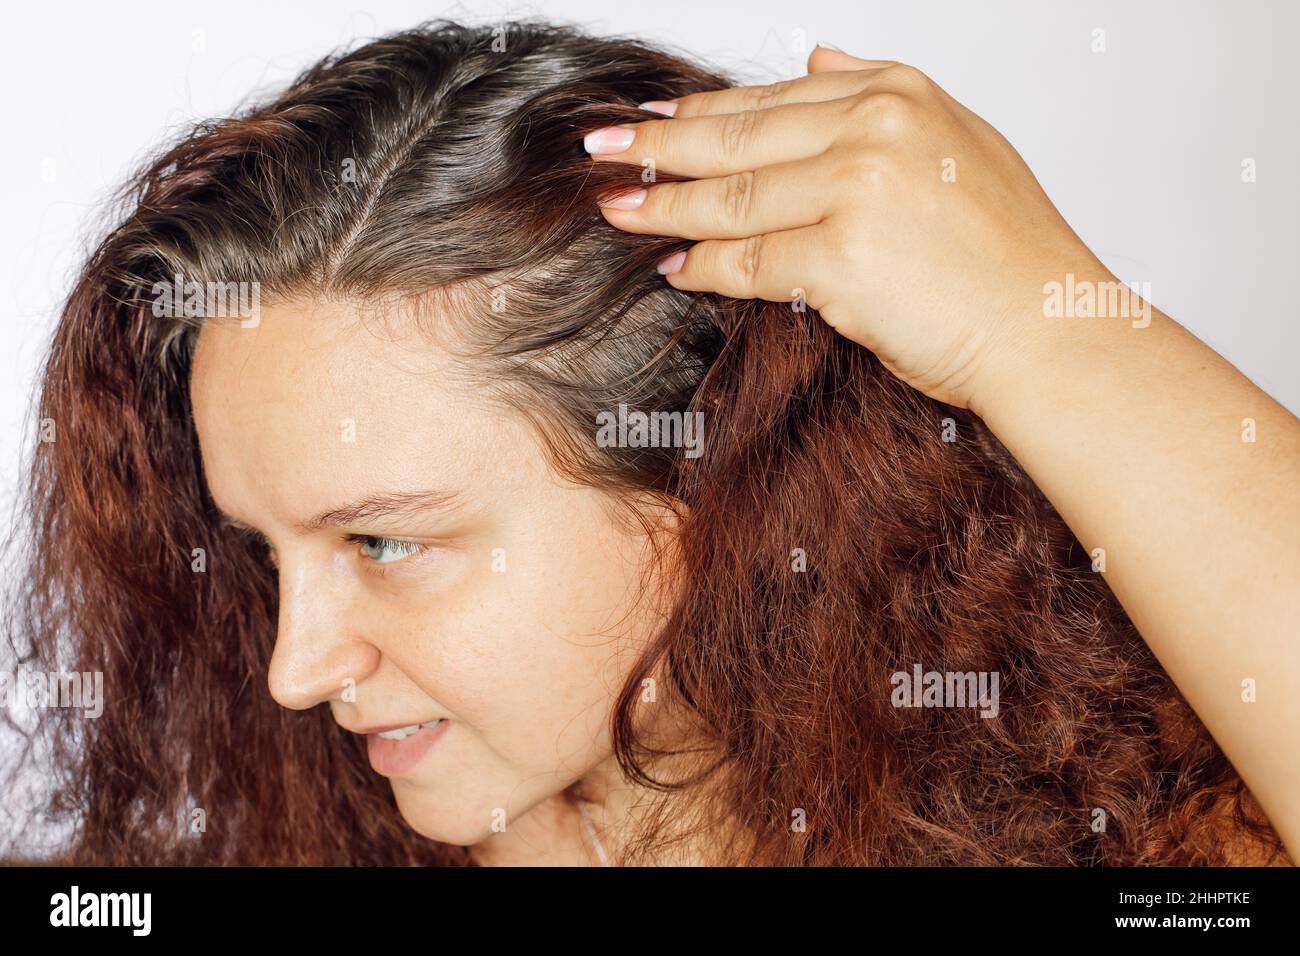 Frau zeigt grauende Haarwurzeln, indem sie die linke Haarseite auf weißen Hintergrund zurückdrückt. Nachwachsende Wurzeln, die einer Wiederkölerung bedürfen. Anti-Age-Pflege Stockfoto